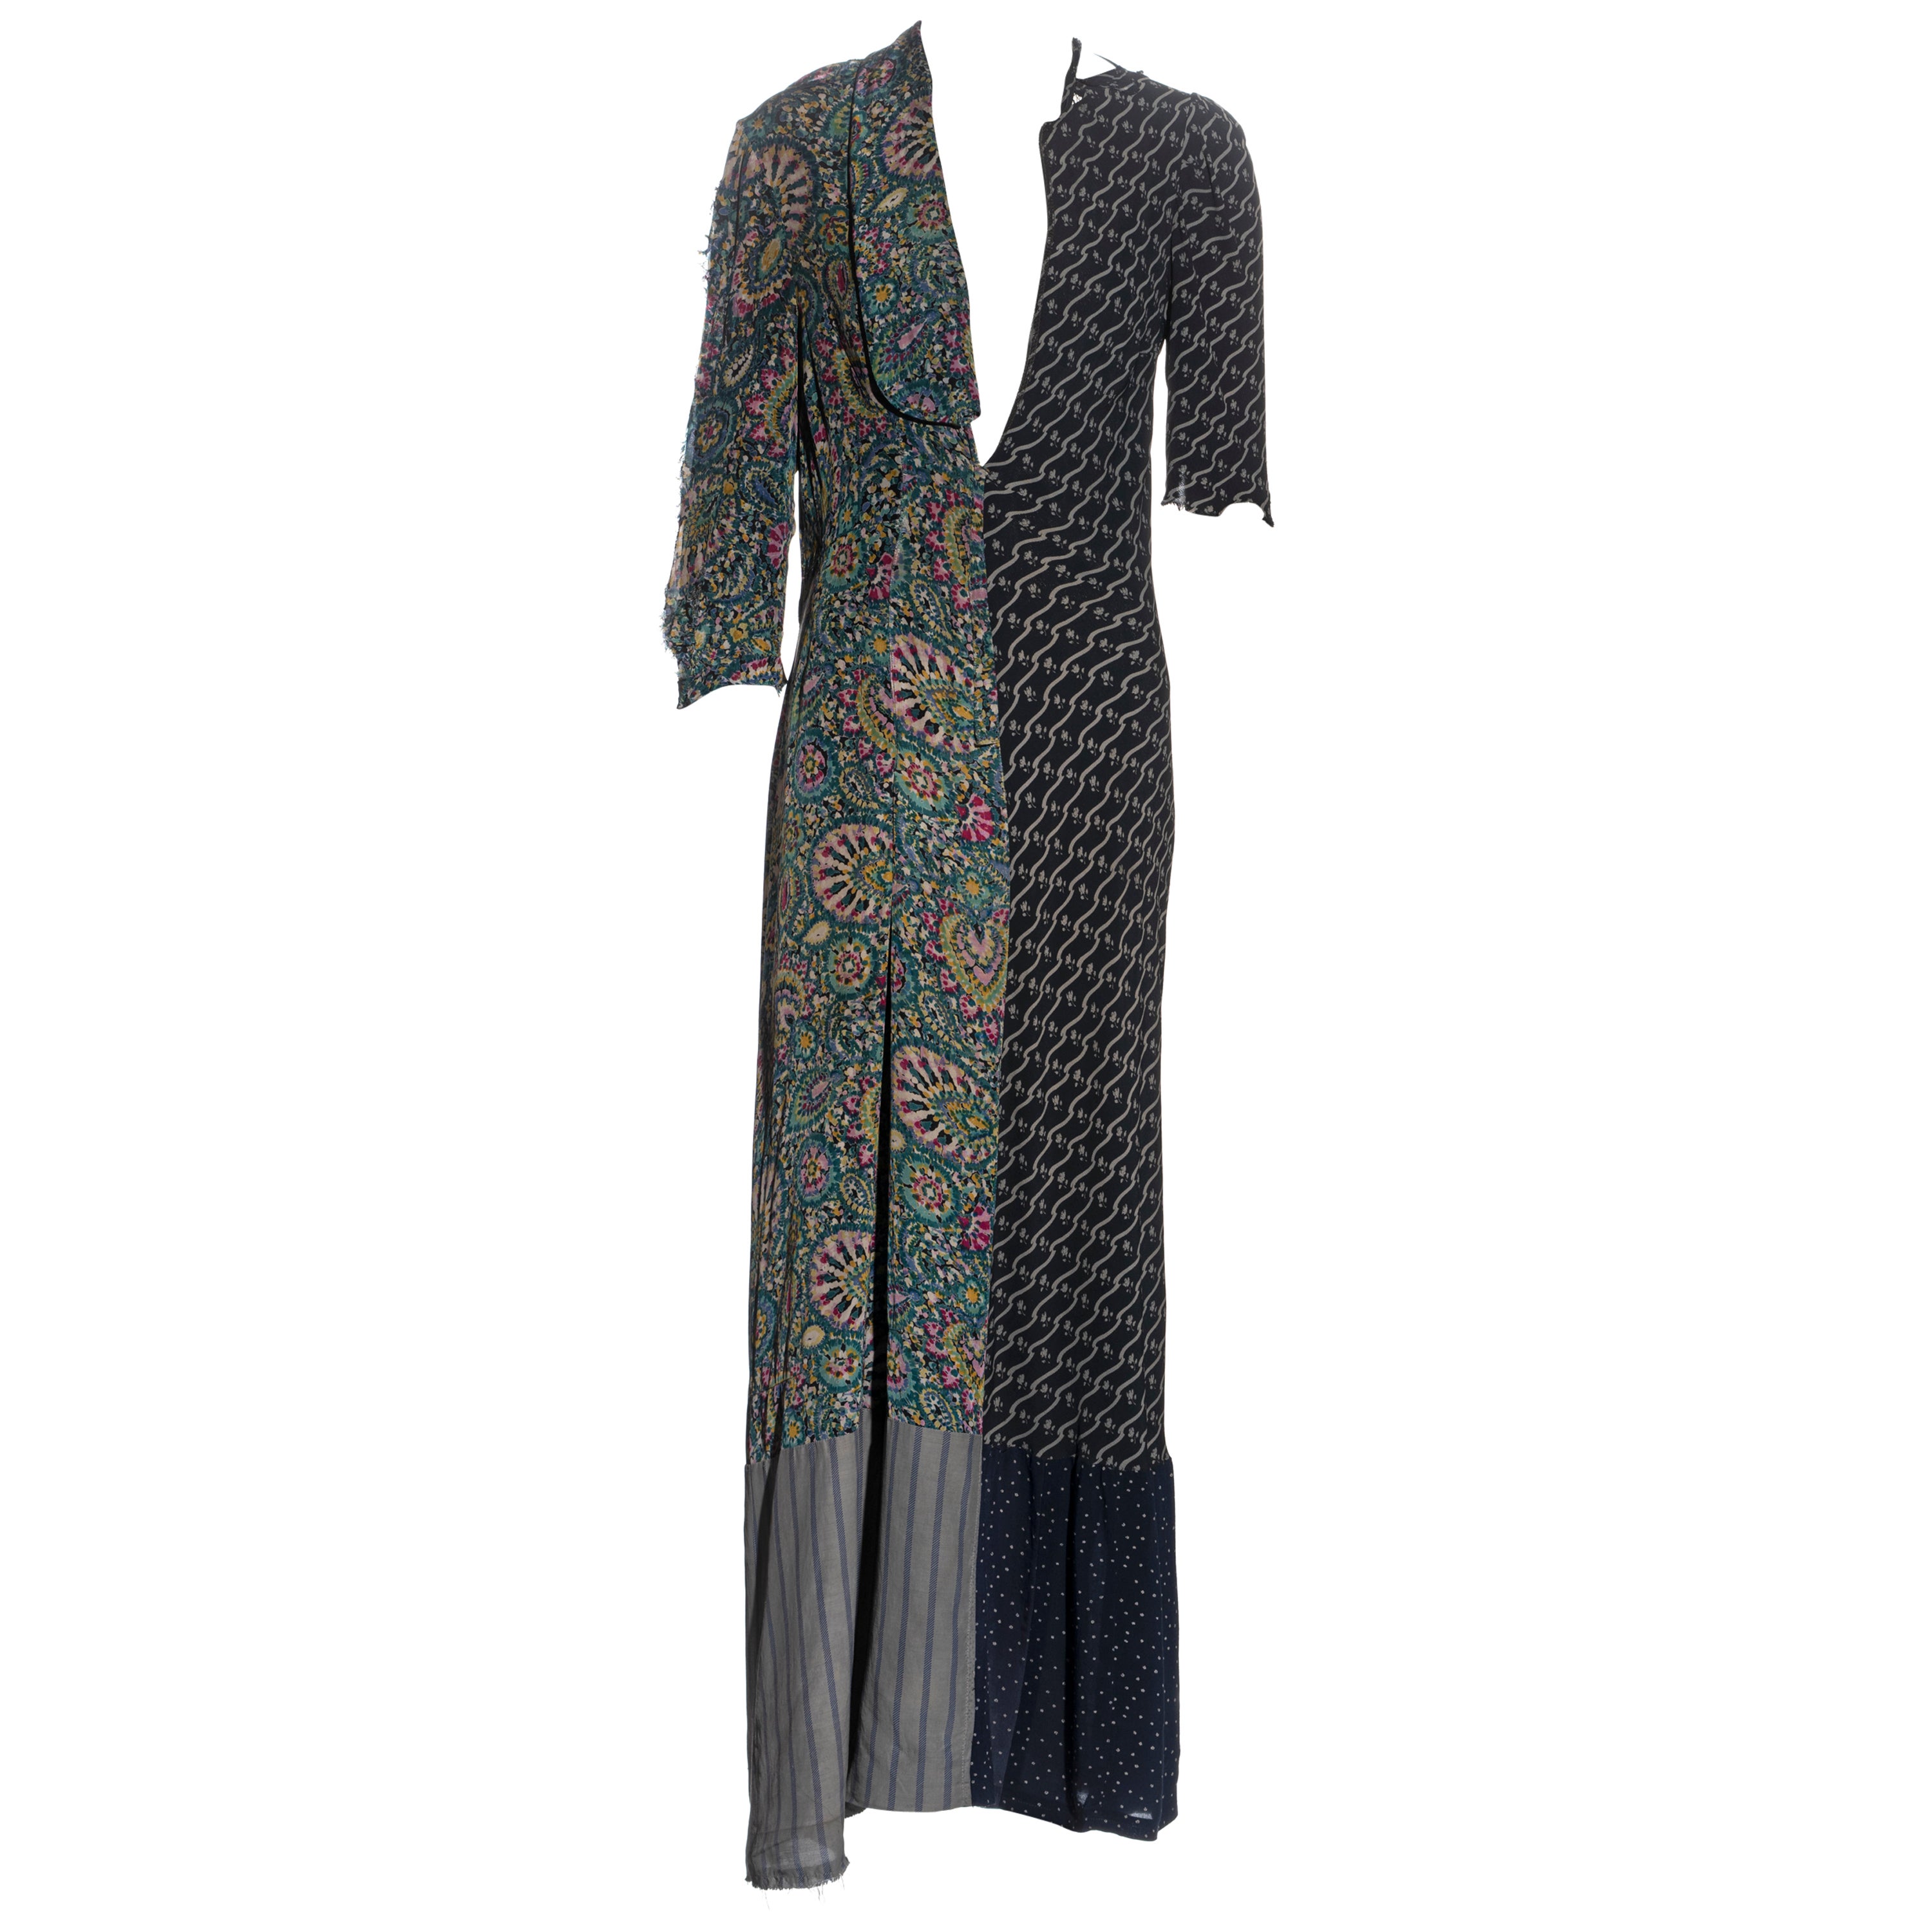 Robe artisanale de Martin Margiela fabriquée à partir de robes vintage récupérées, fw 1993 en vente